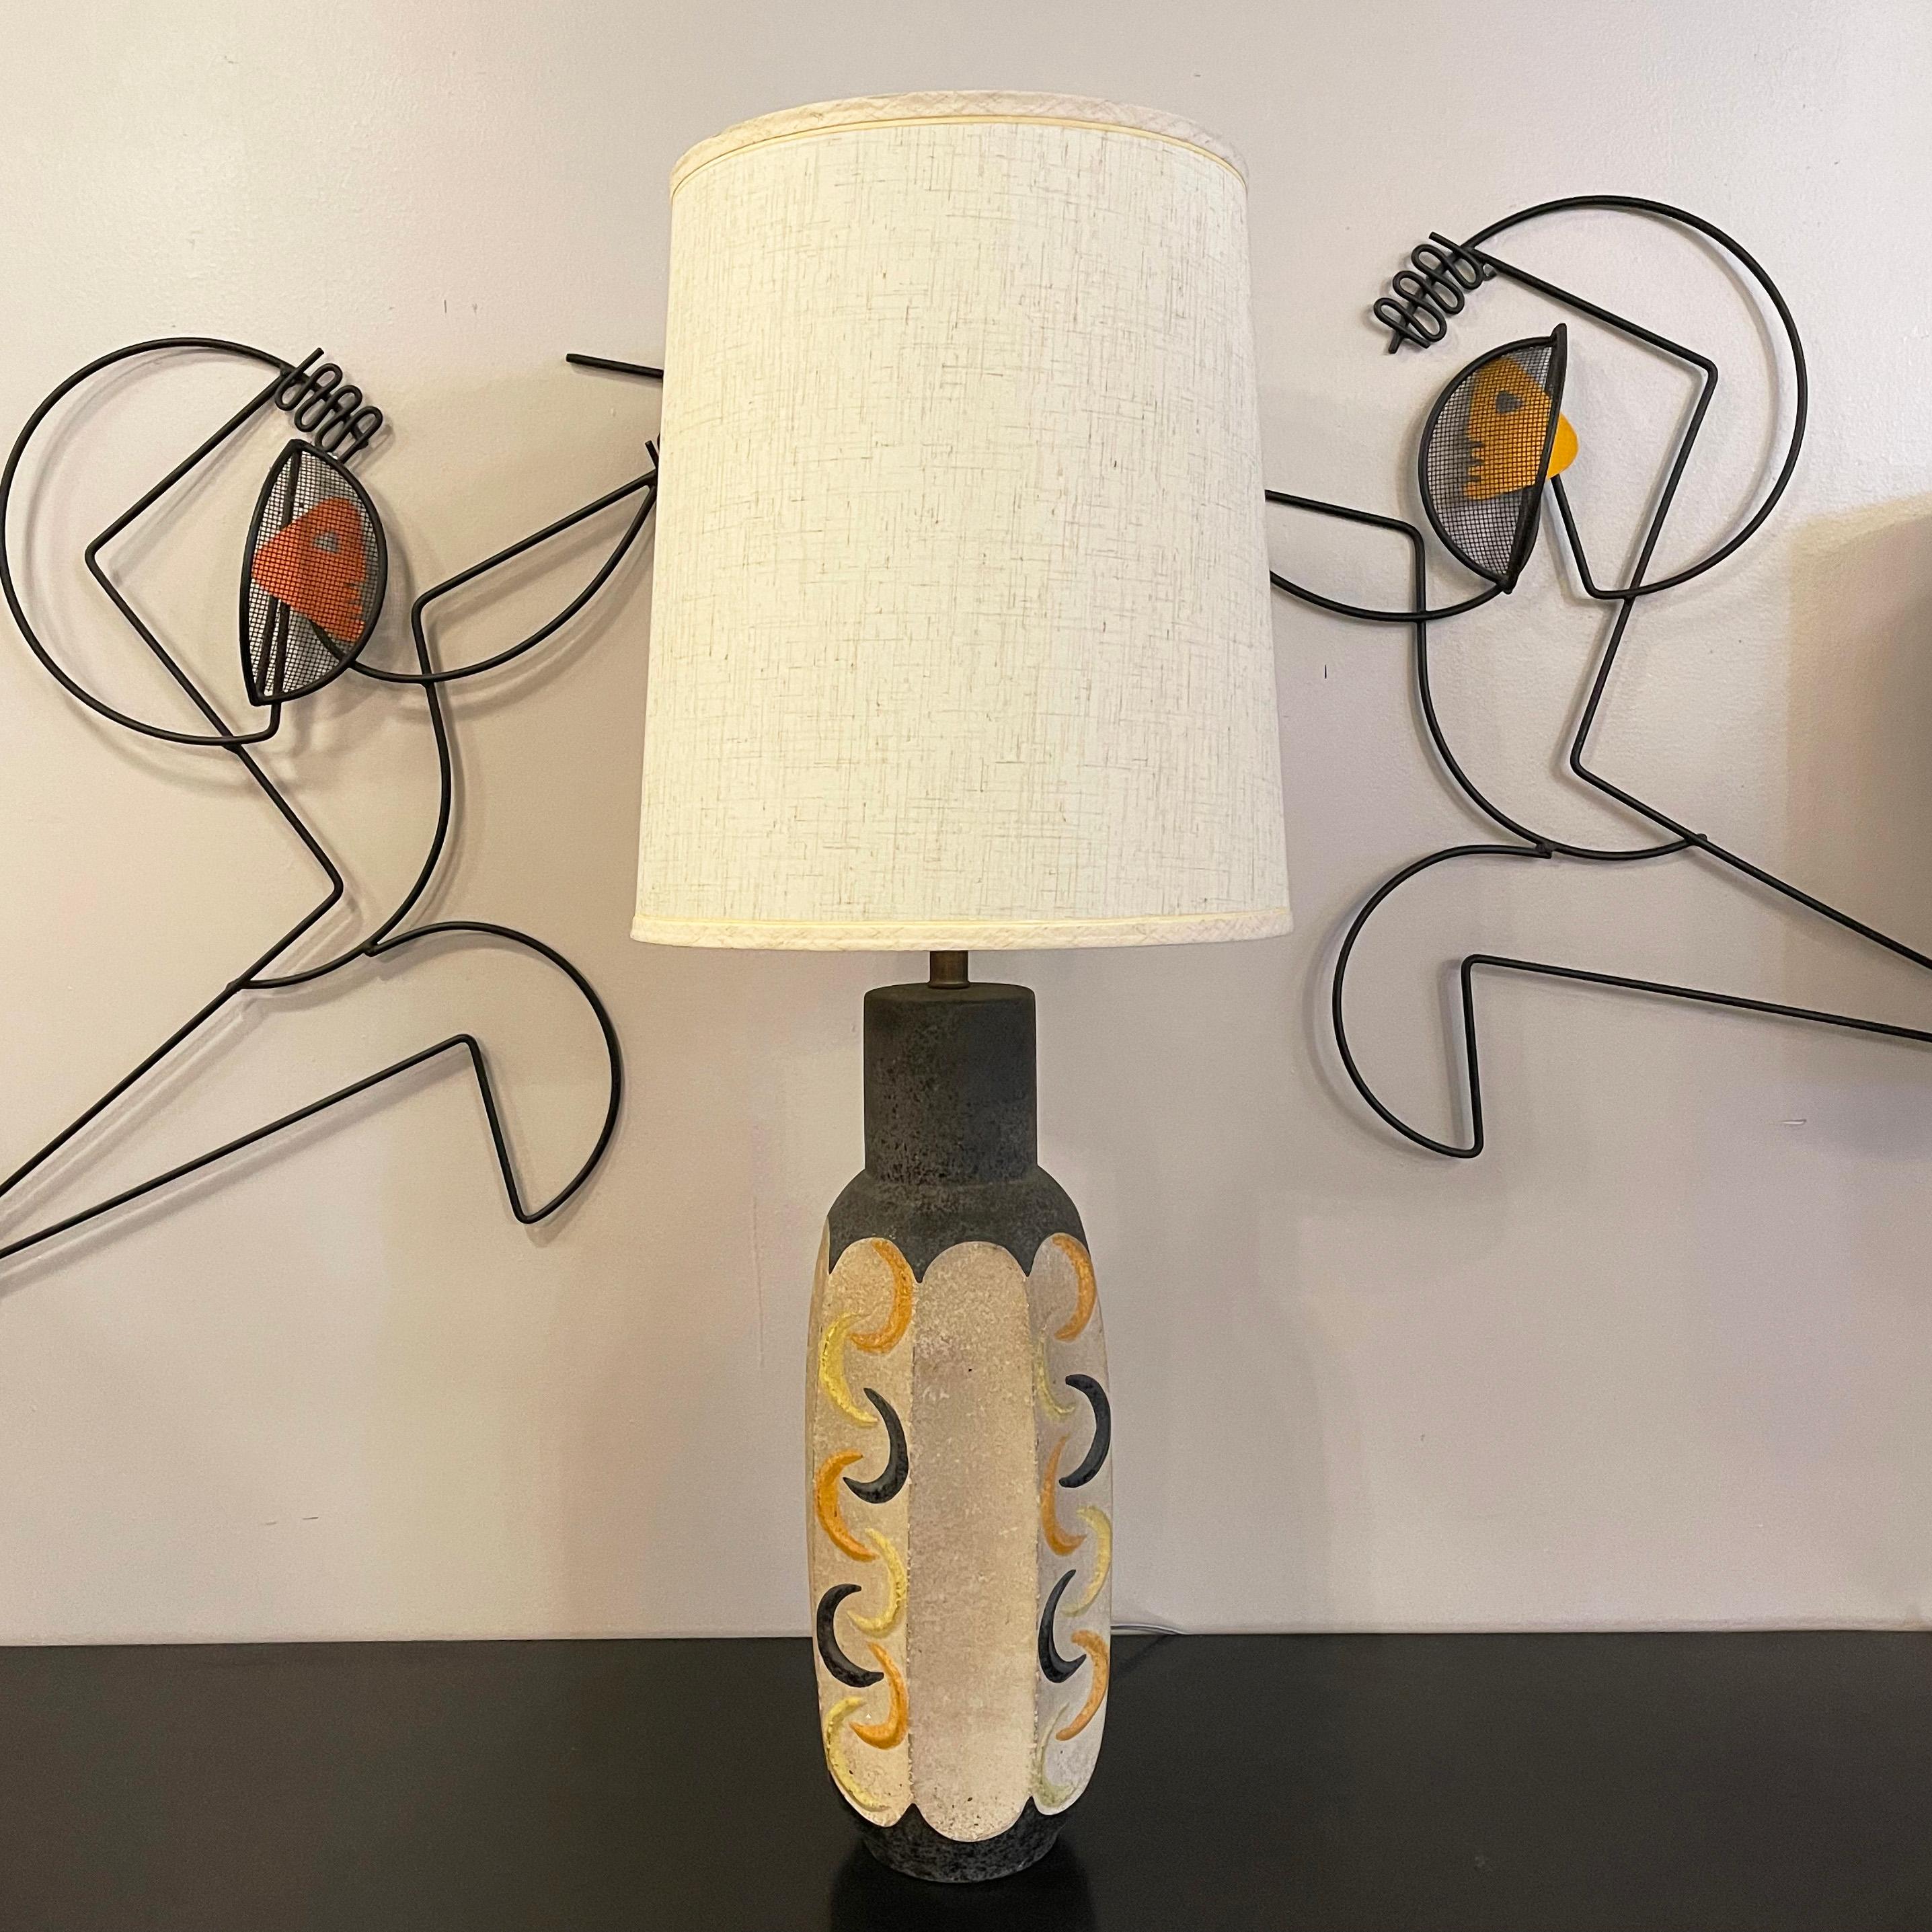 Die moderne Studio Art Pottery Tischlampe von Tye Of California zeichnet sich durch einen facettierten Körper mit gelben, orangefarbenen und grauen Halbmondformen vor einem cremefarbenen Hintergrund aus. Die Höhe des Keramikkörpers beträgt 20 Zoll